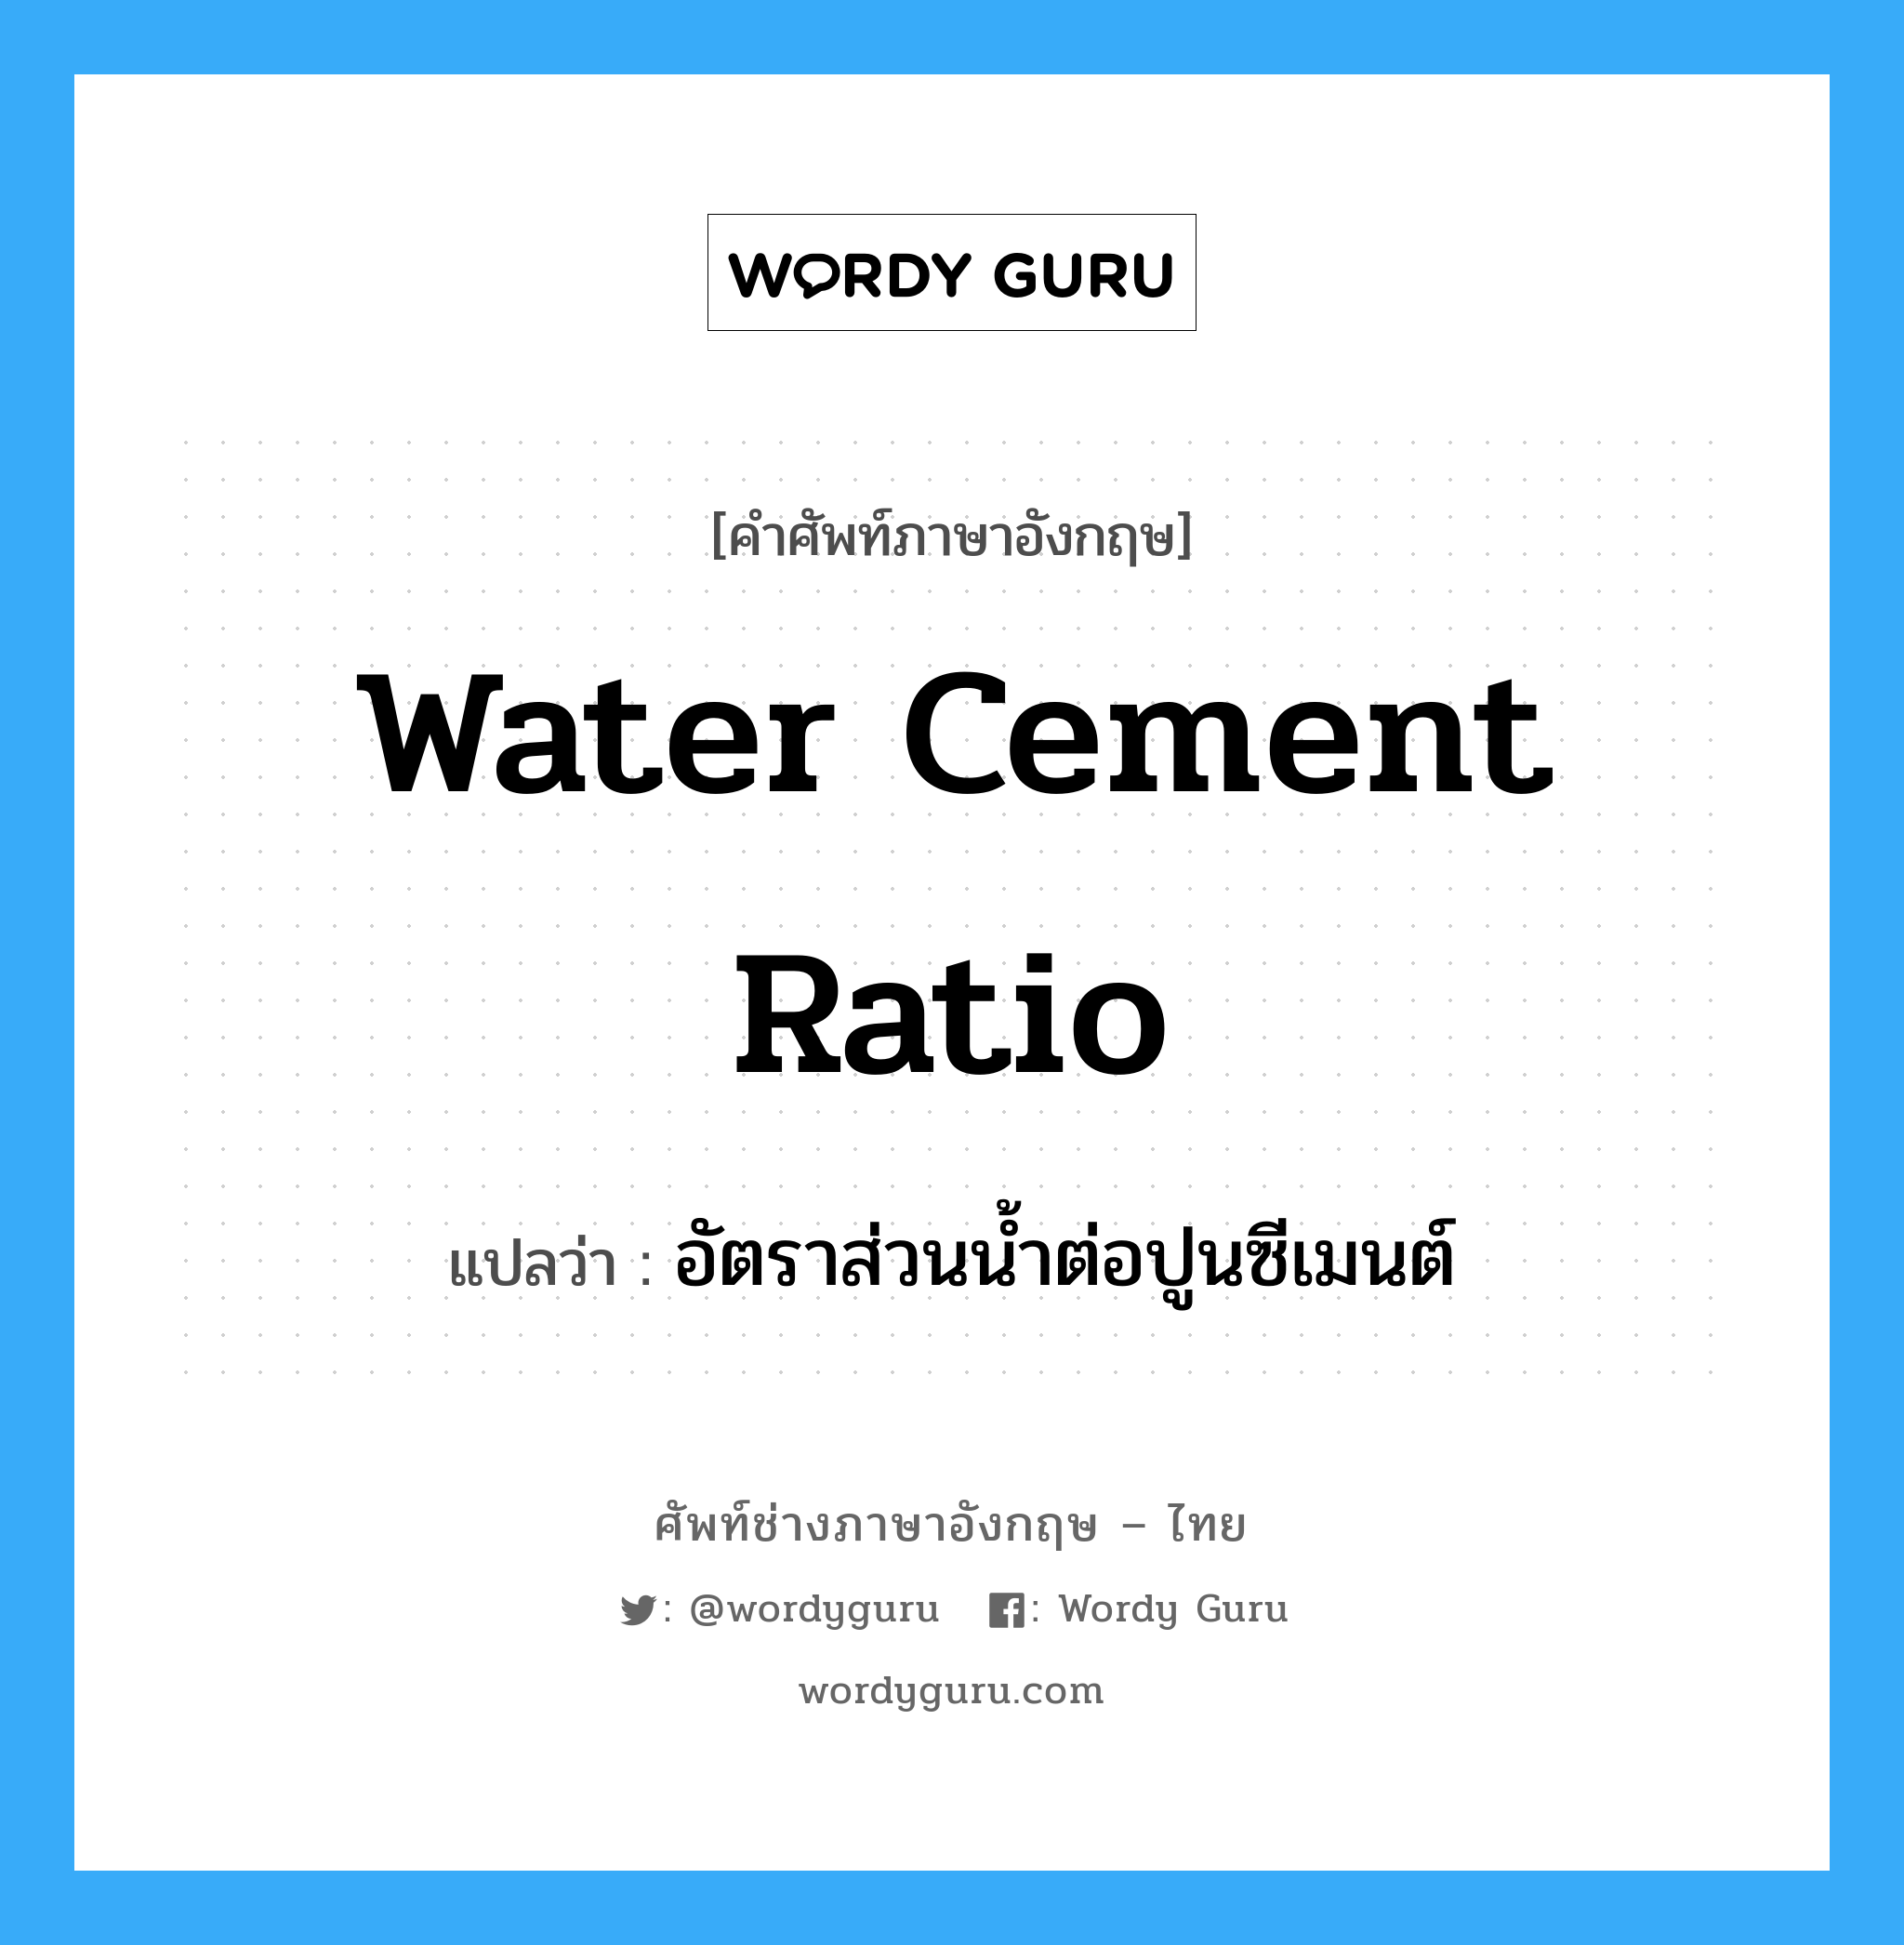 อัตราส่วนน้ำต่อปูนซีเมนต์ ภาษาอังกฤษ?, คำศัพท์ช่างภาษาอังกฤษ - ไทย อัตราส่วนน้ำต่อปูนซีเมนต์ คำศัพท์ภาษาอังกฤษ อัตราส่วนน้ำต่อปูนซีเมนต์ แปลว่า water cement ratio